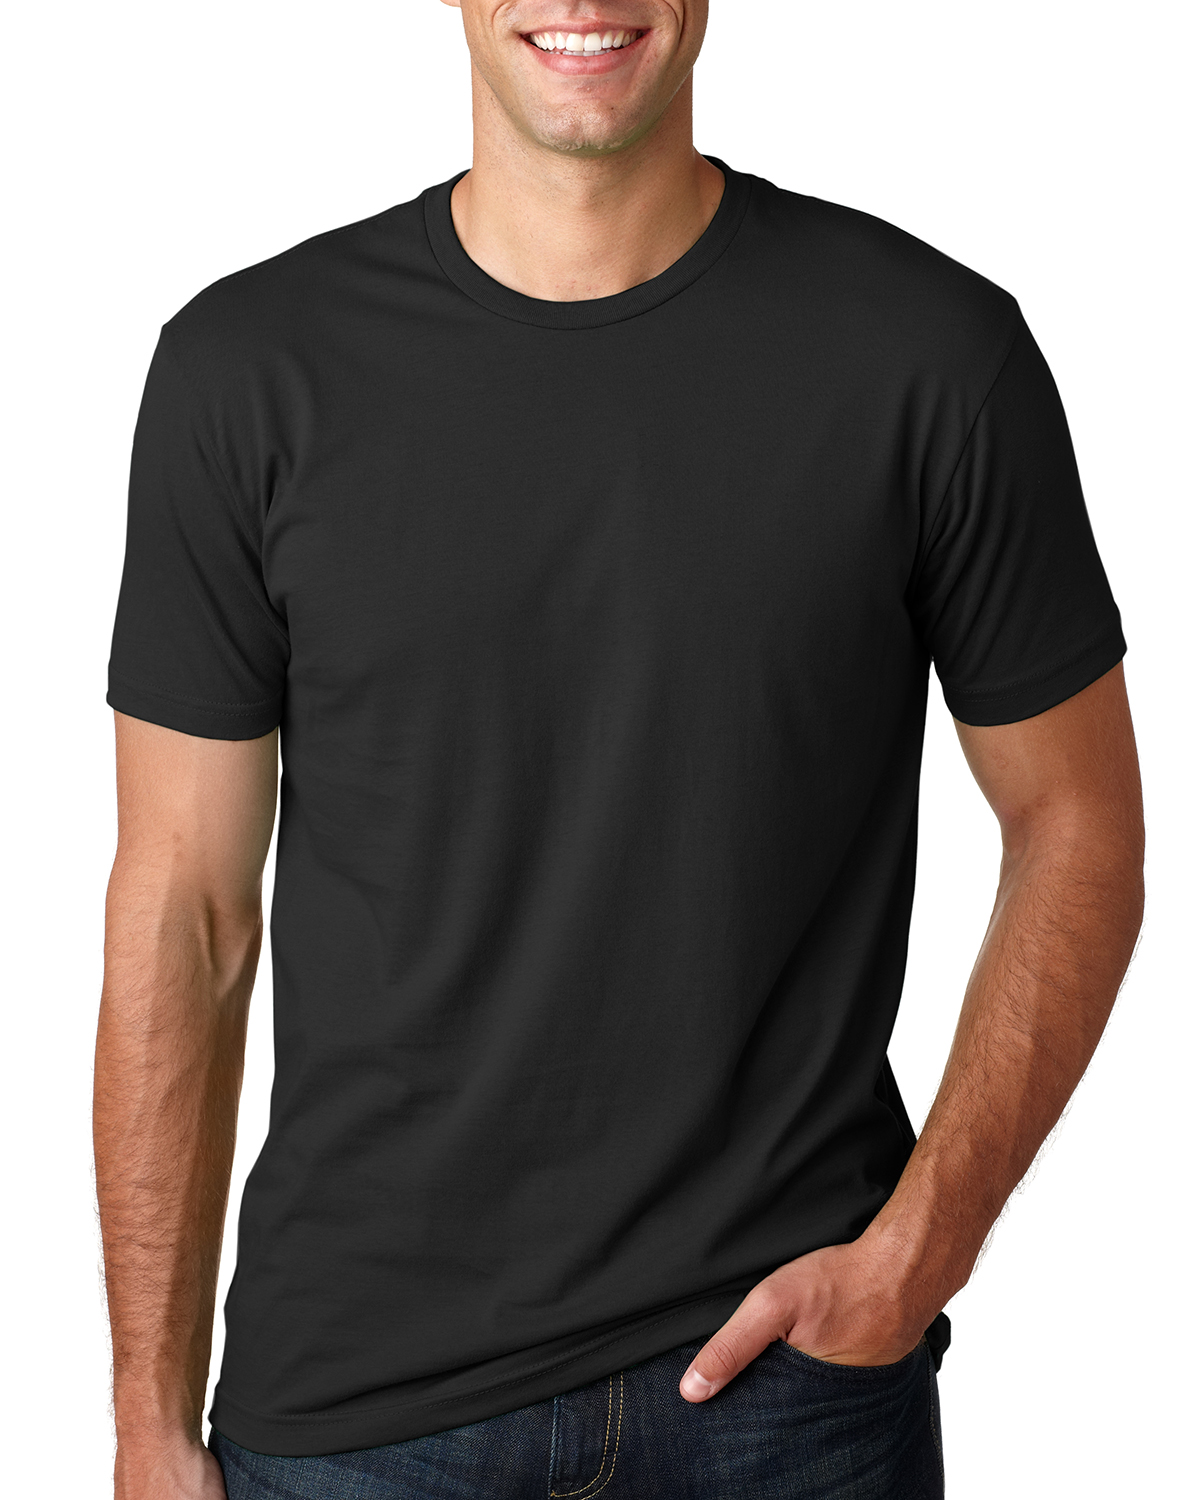 Next Level 3600 Unisex Cotton T Shirt - Black - Xs